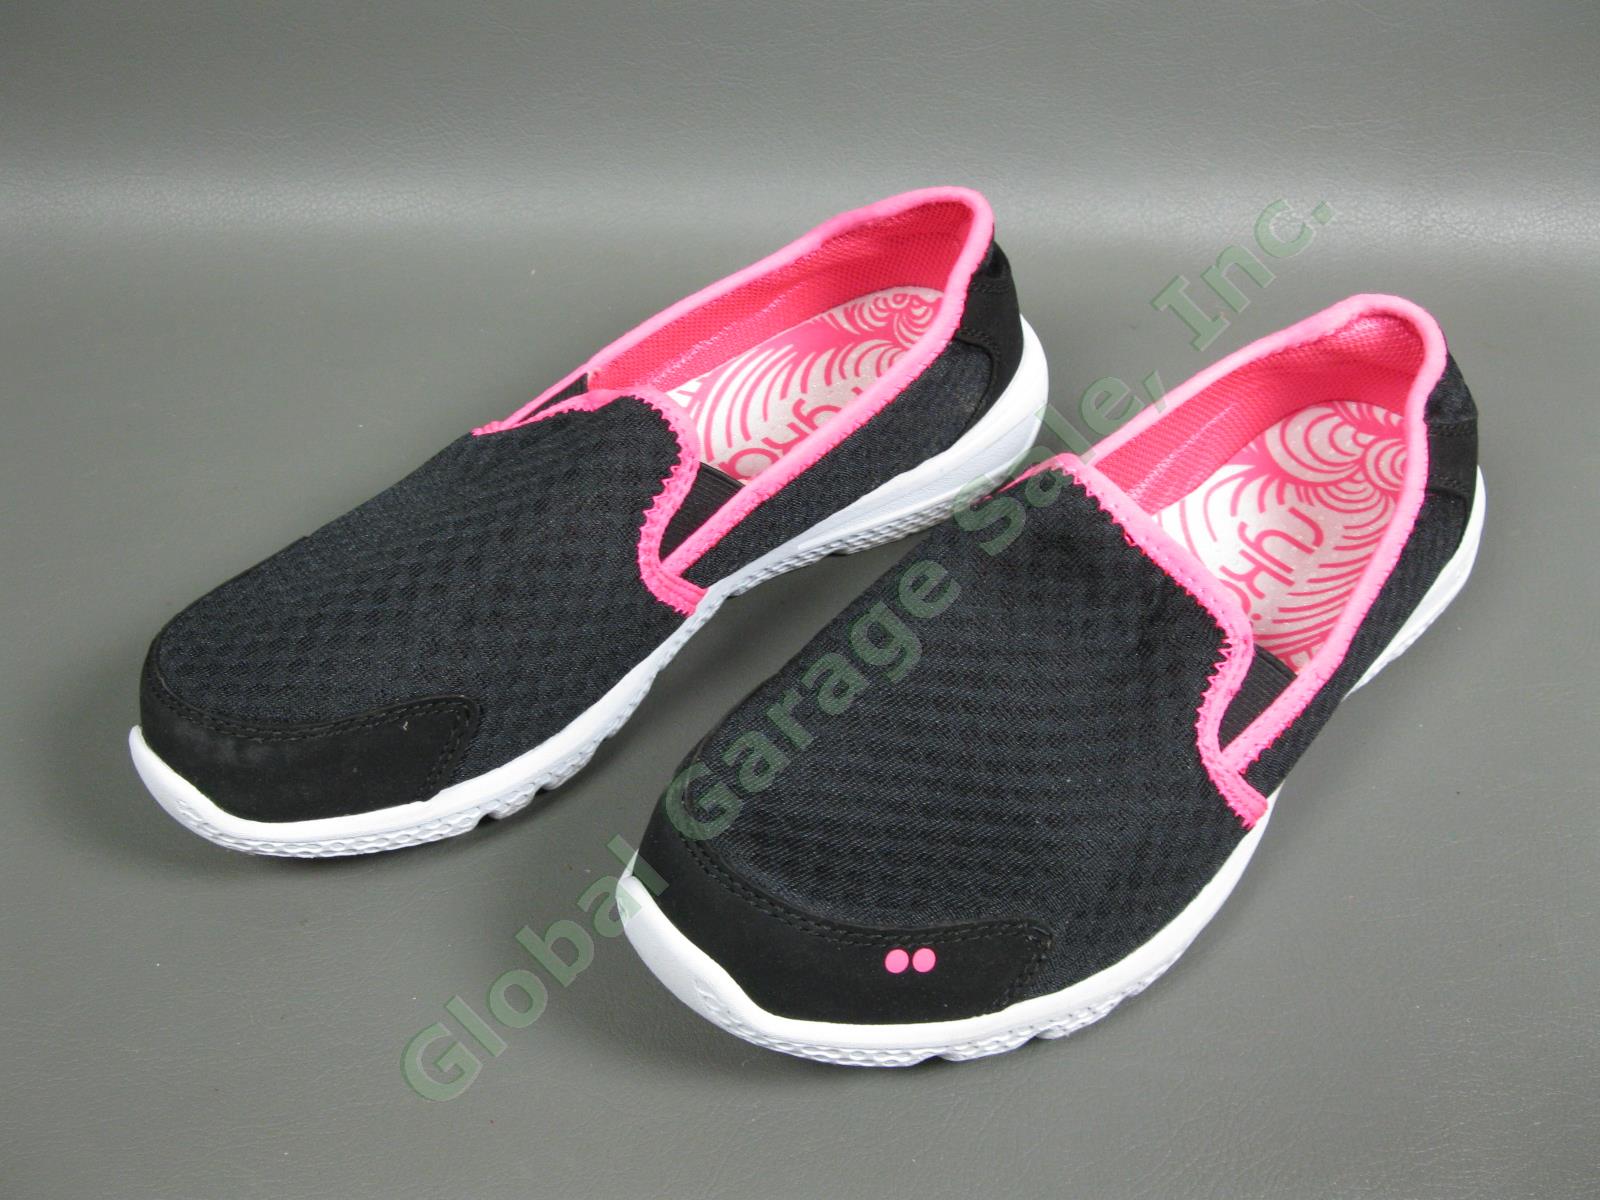 6 Pair Womens Walking Slip-In Sandal Size 8.5M-9M Shoe Lot Naturalizer Ryka Impo 2